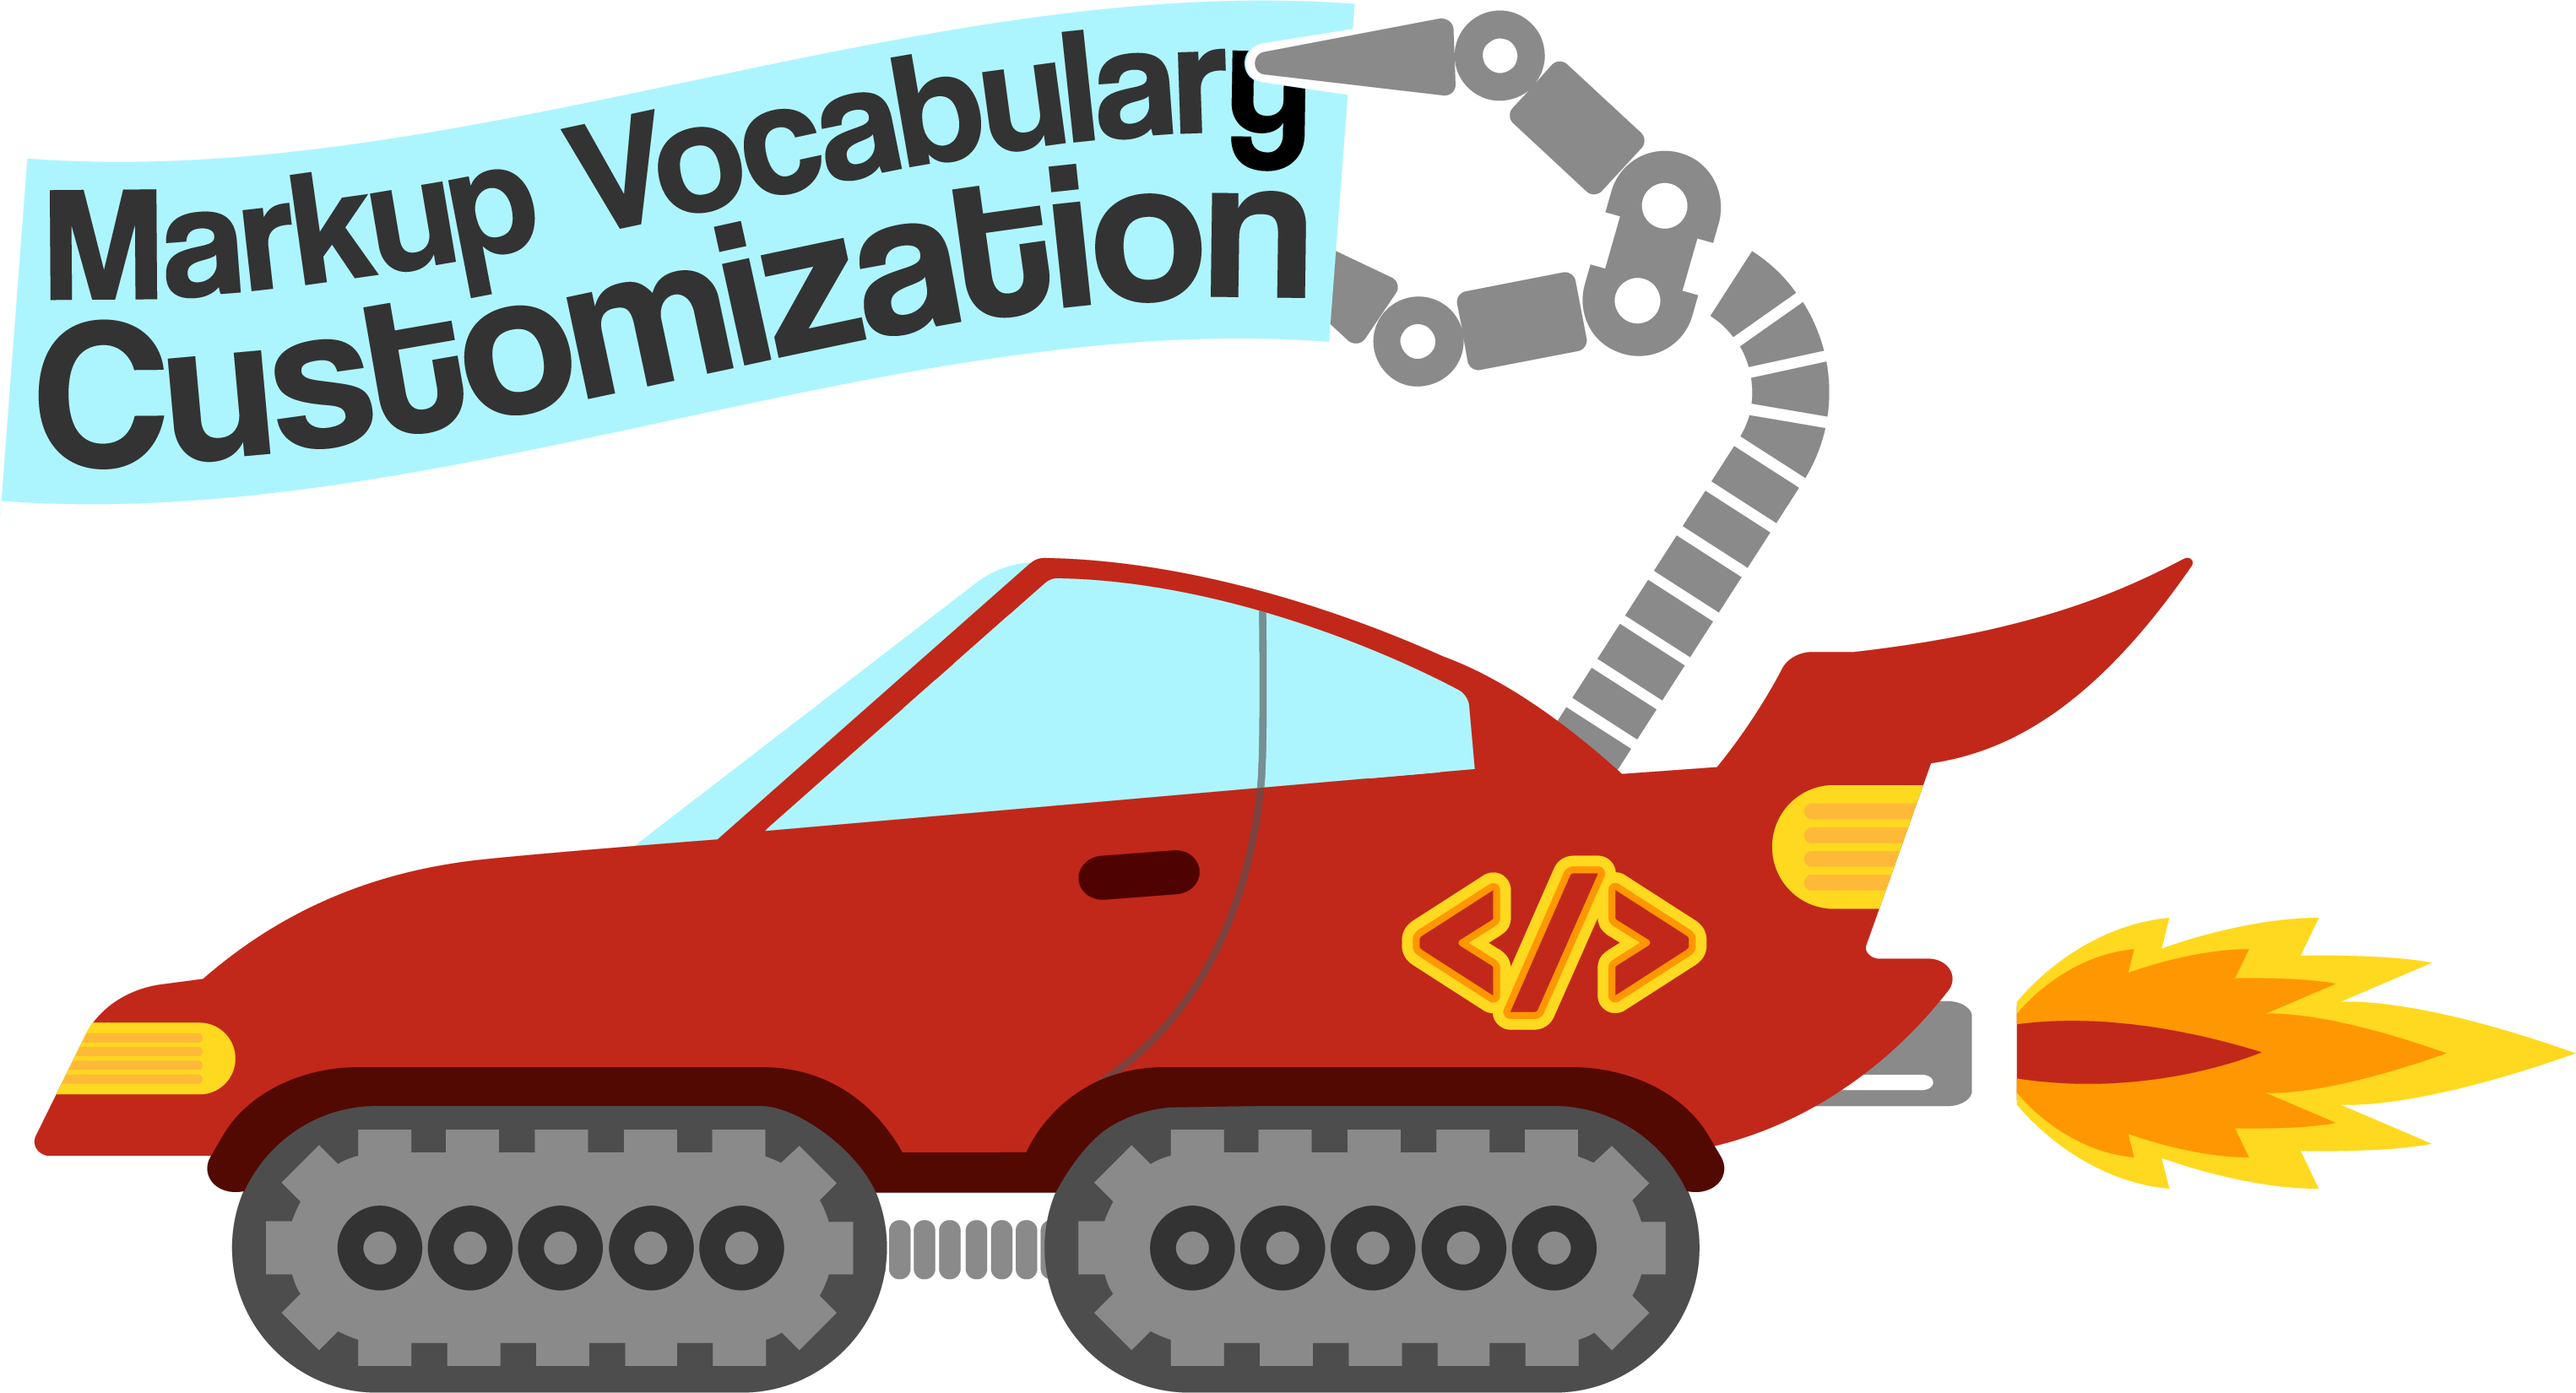 Symposium on Markup Vocabulary Customization